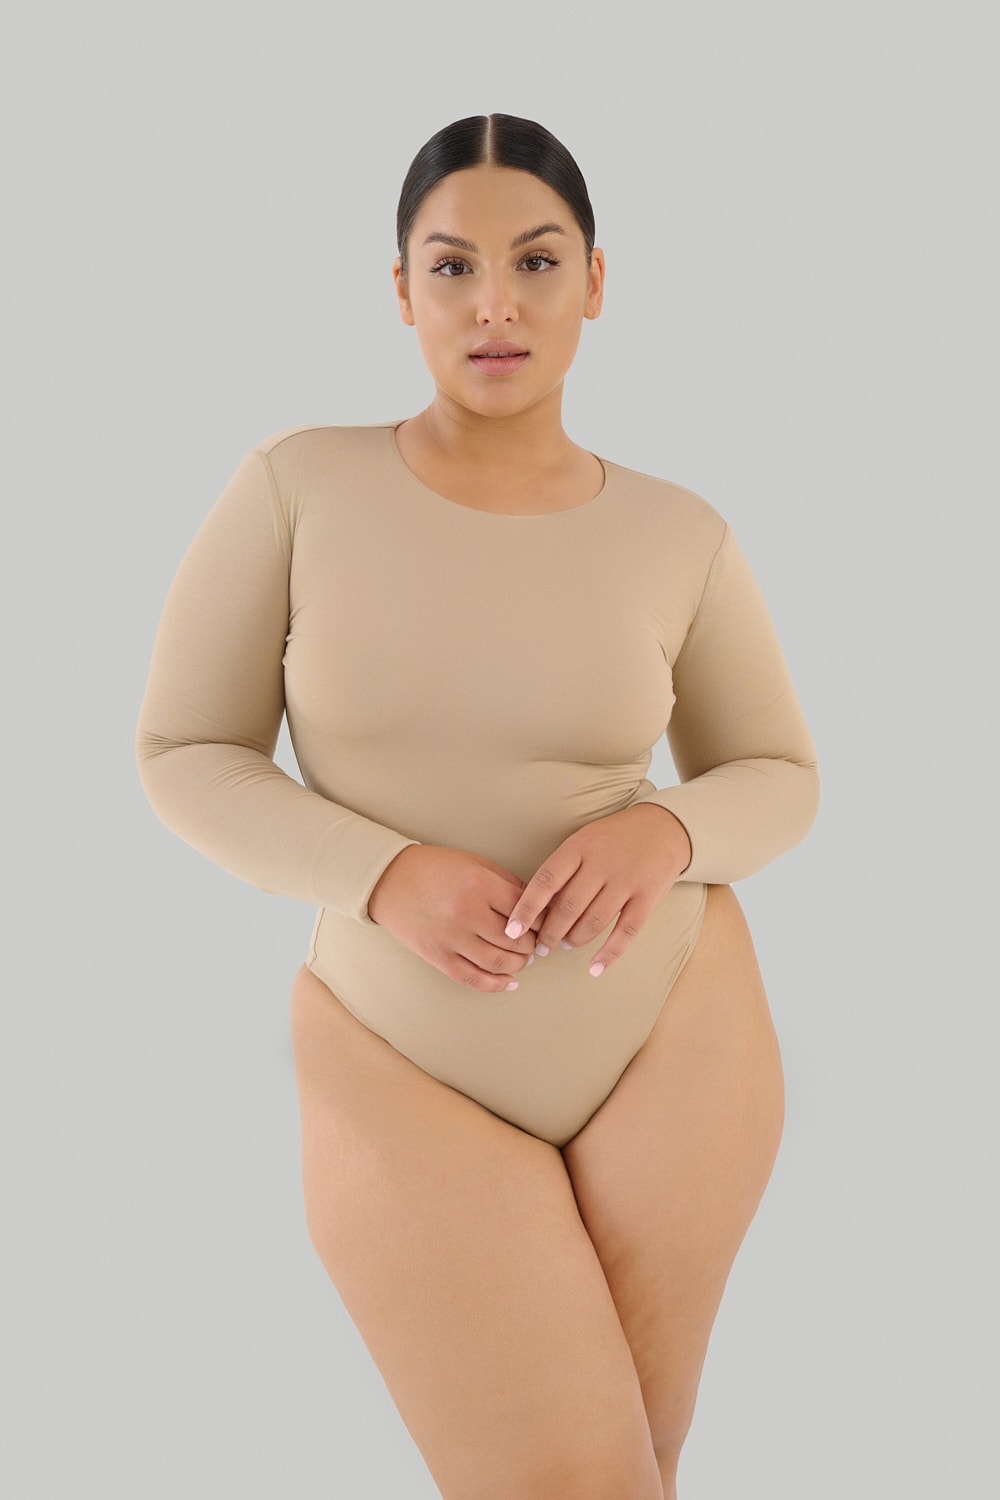 Longsleeve Bodysuit - Nude